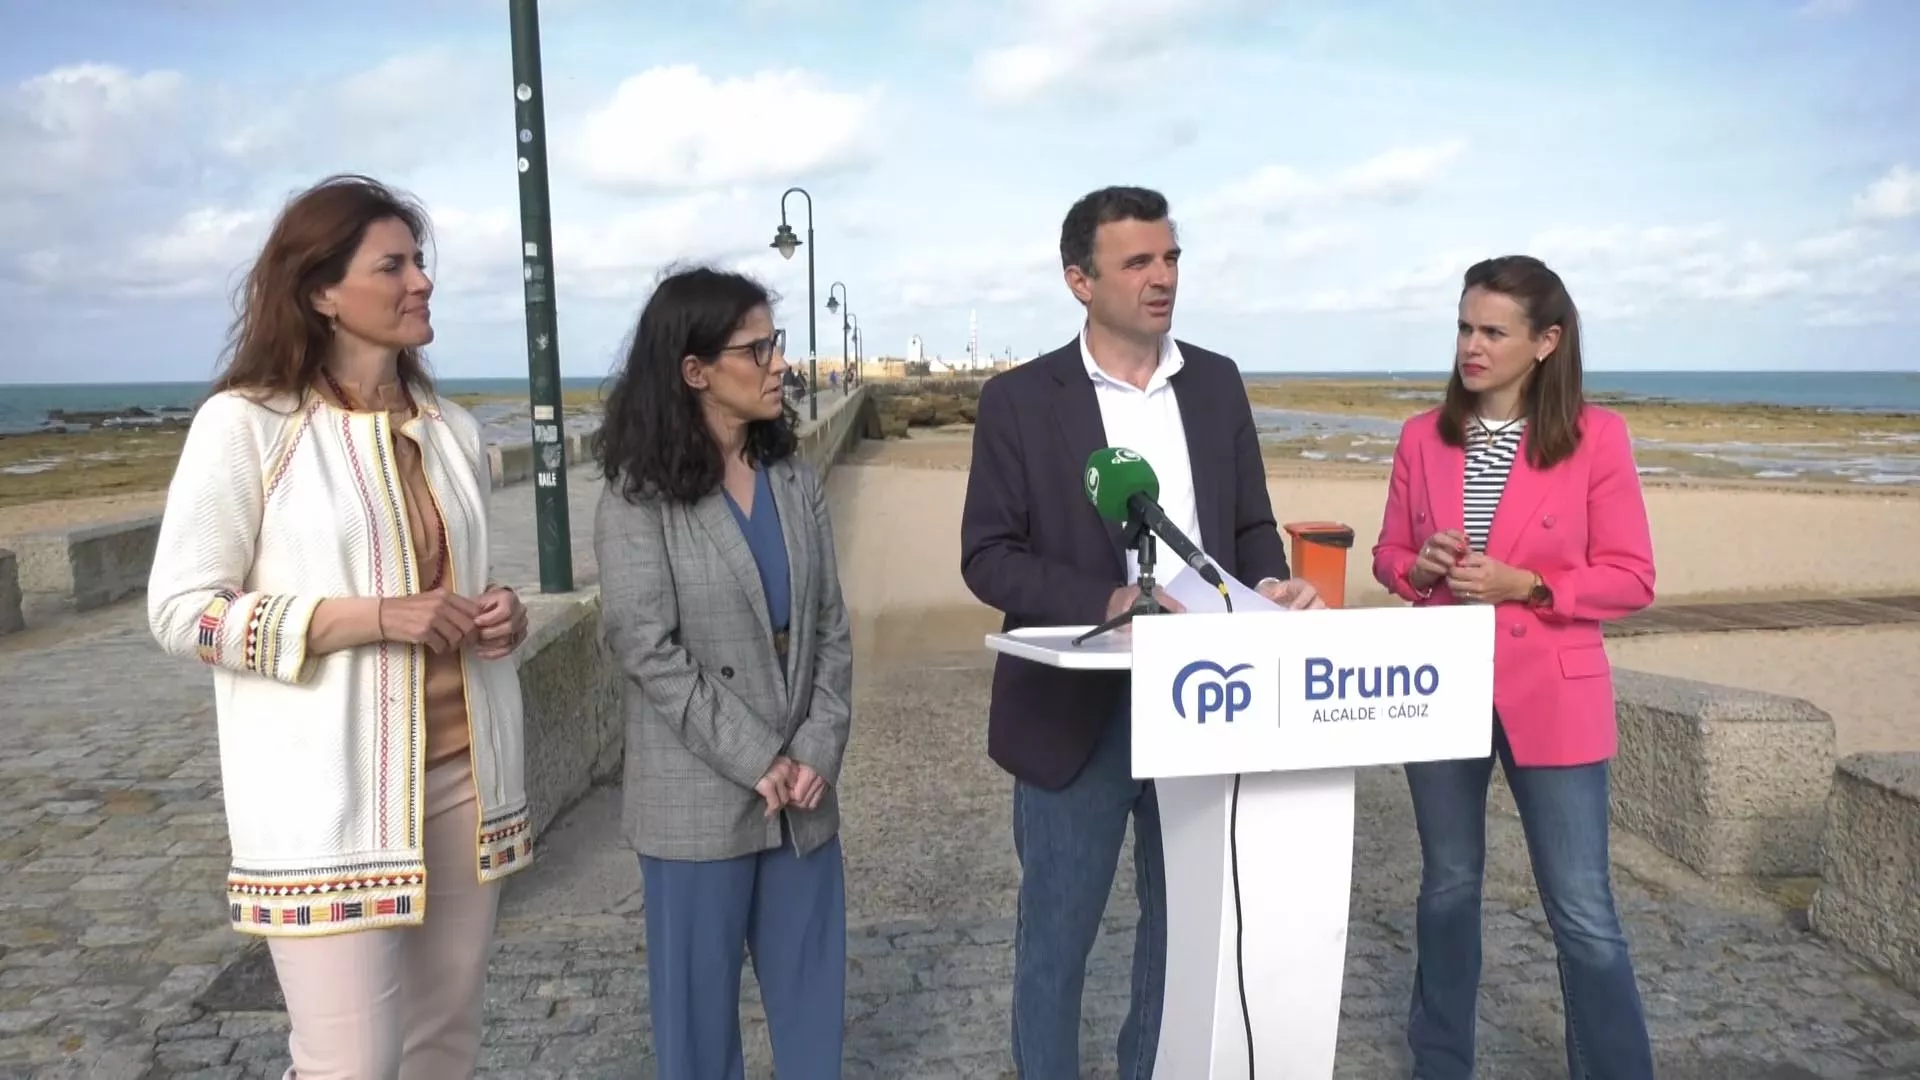 El candidato del PP, Bruno García, junto a 3 compañeras de candidatura, ha presentado su propuesta del Castillo de San Sebastián en el Paseo Quiñones de la Caleta